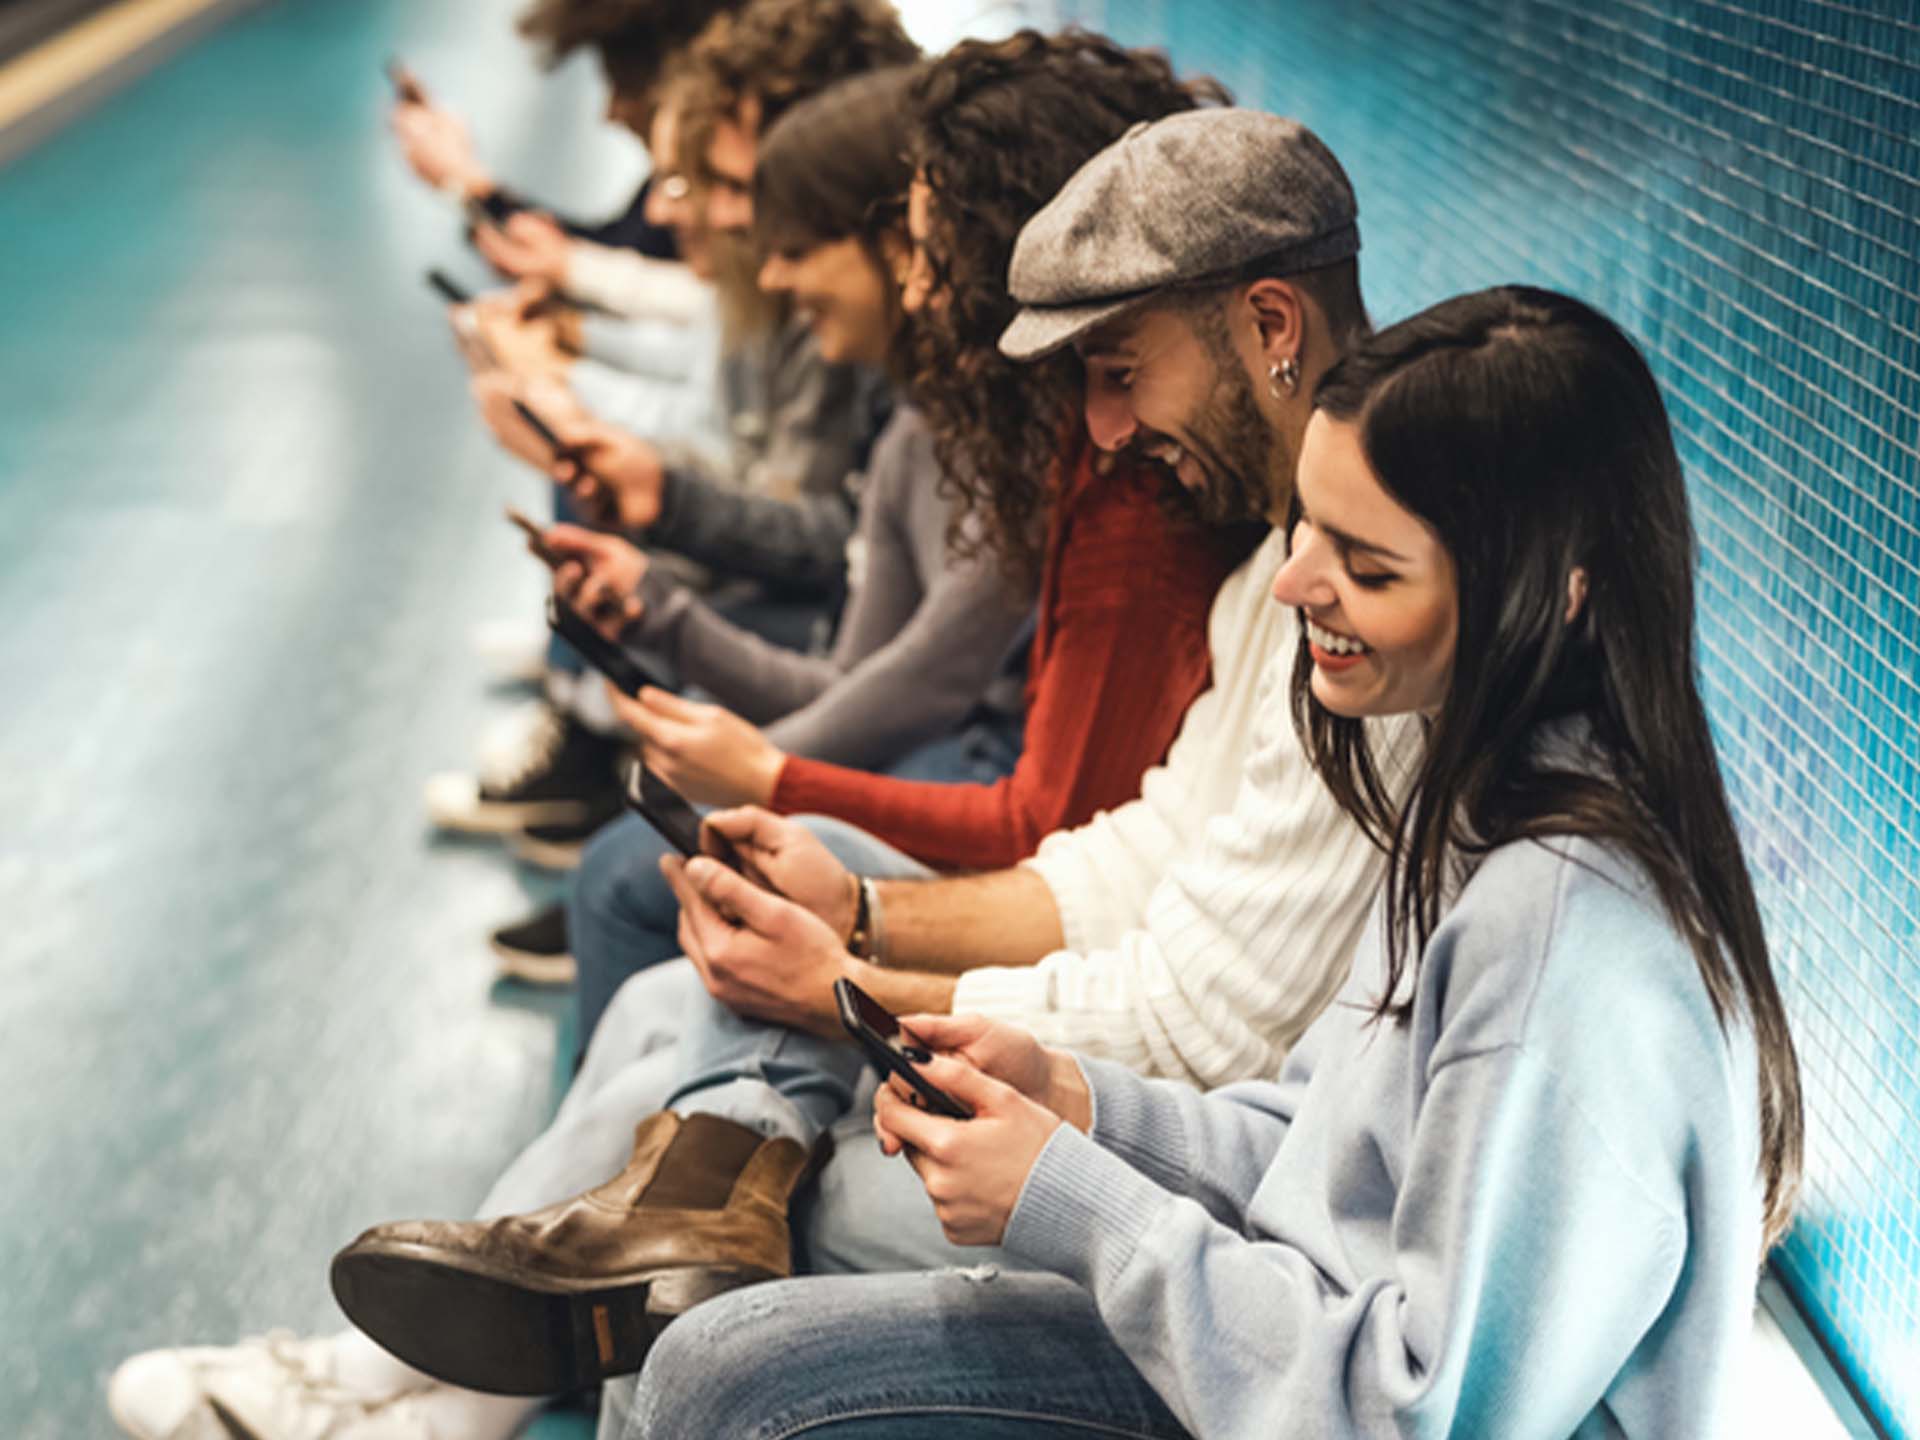 Gruppe sitzt auf dem U-Bahnsteig und spielt mit den Handys. Spielen.